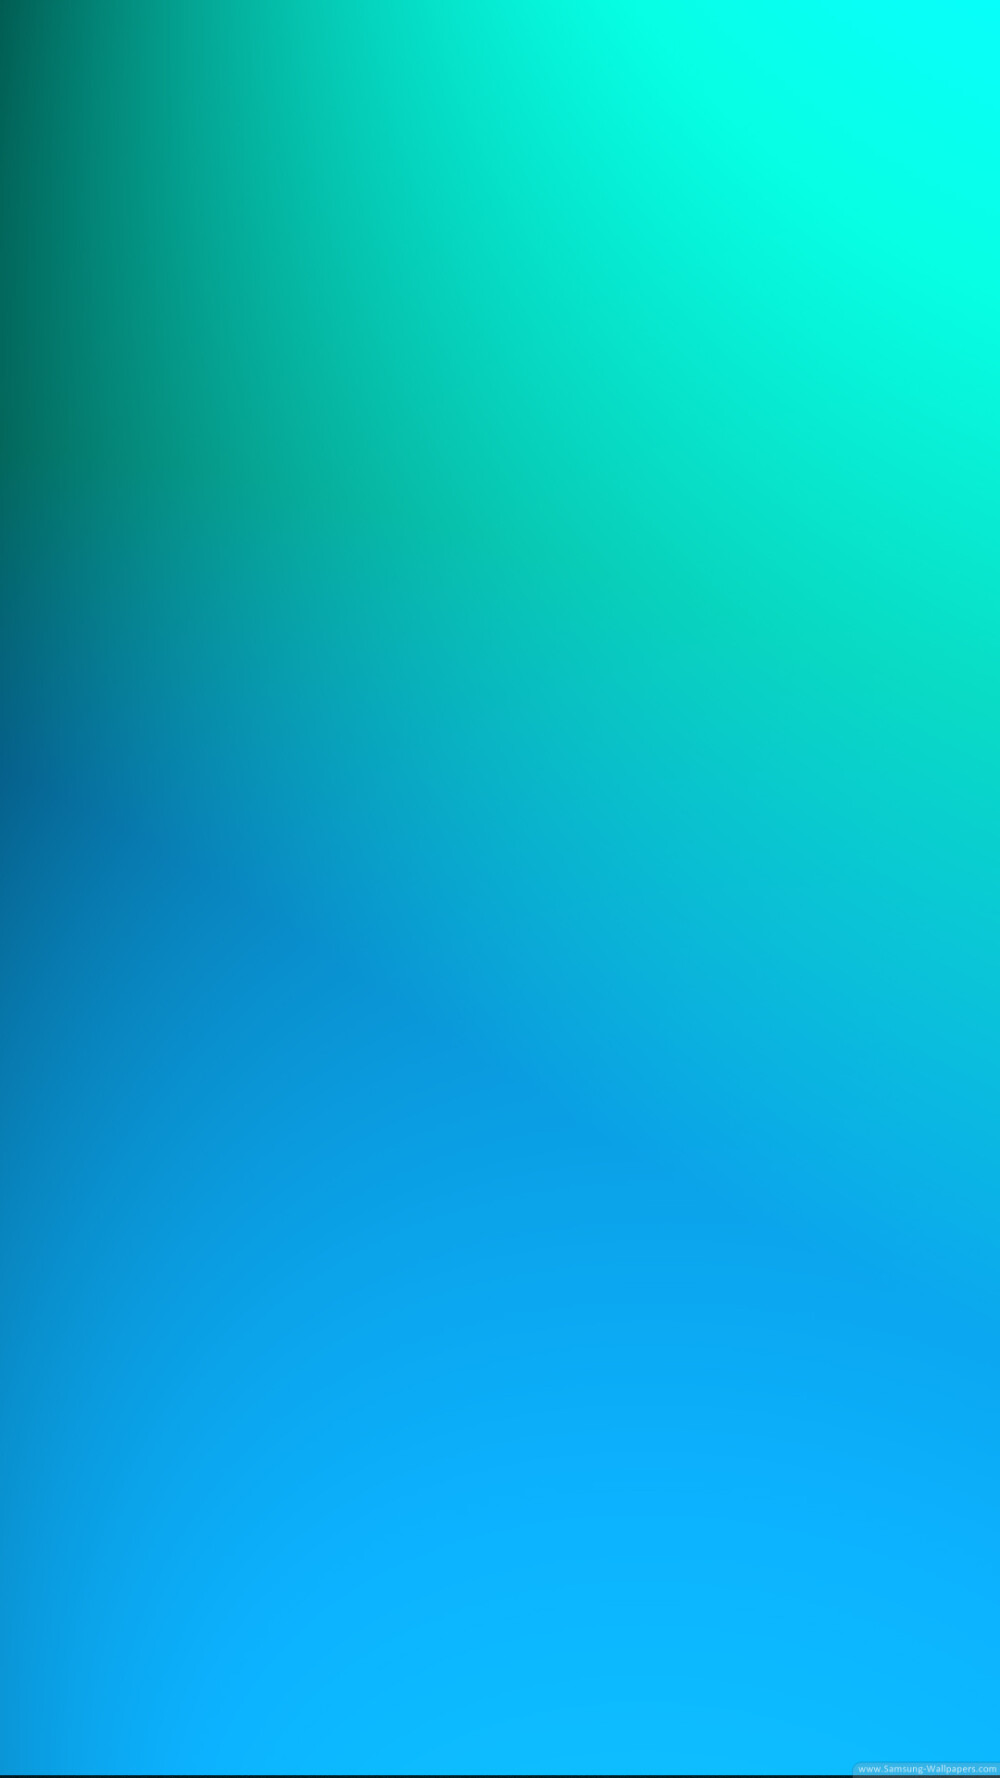 三星手机壁纸【1080x1920】蓝色 渐变 绿色